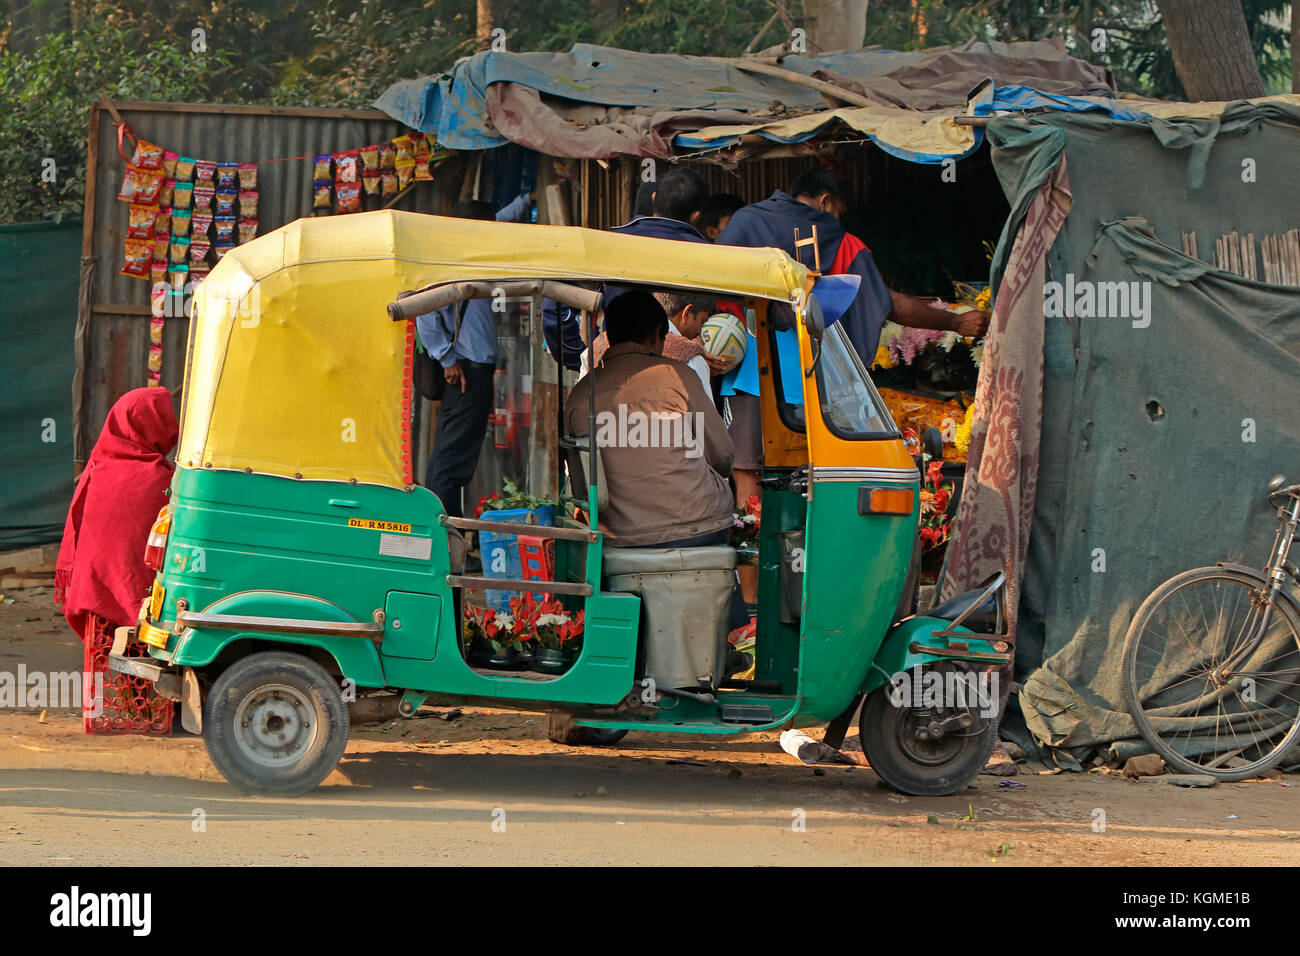 Delhi, Indien - 24. November 2015: straßenhändler und ein Tuk-tuk Fahrzeug, die typisch für den überfüllten Straßen von Old Delhi ist Stockfoto